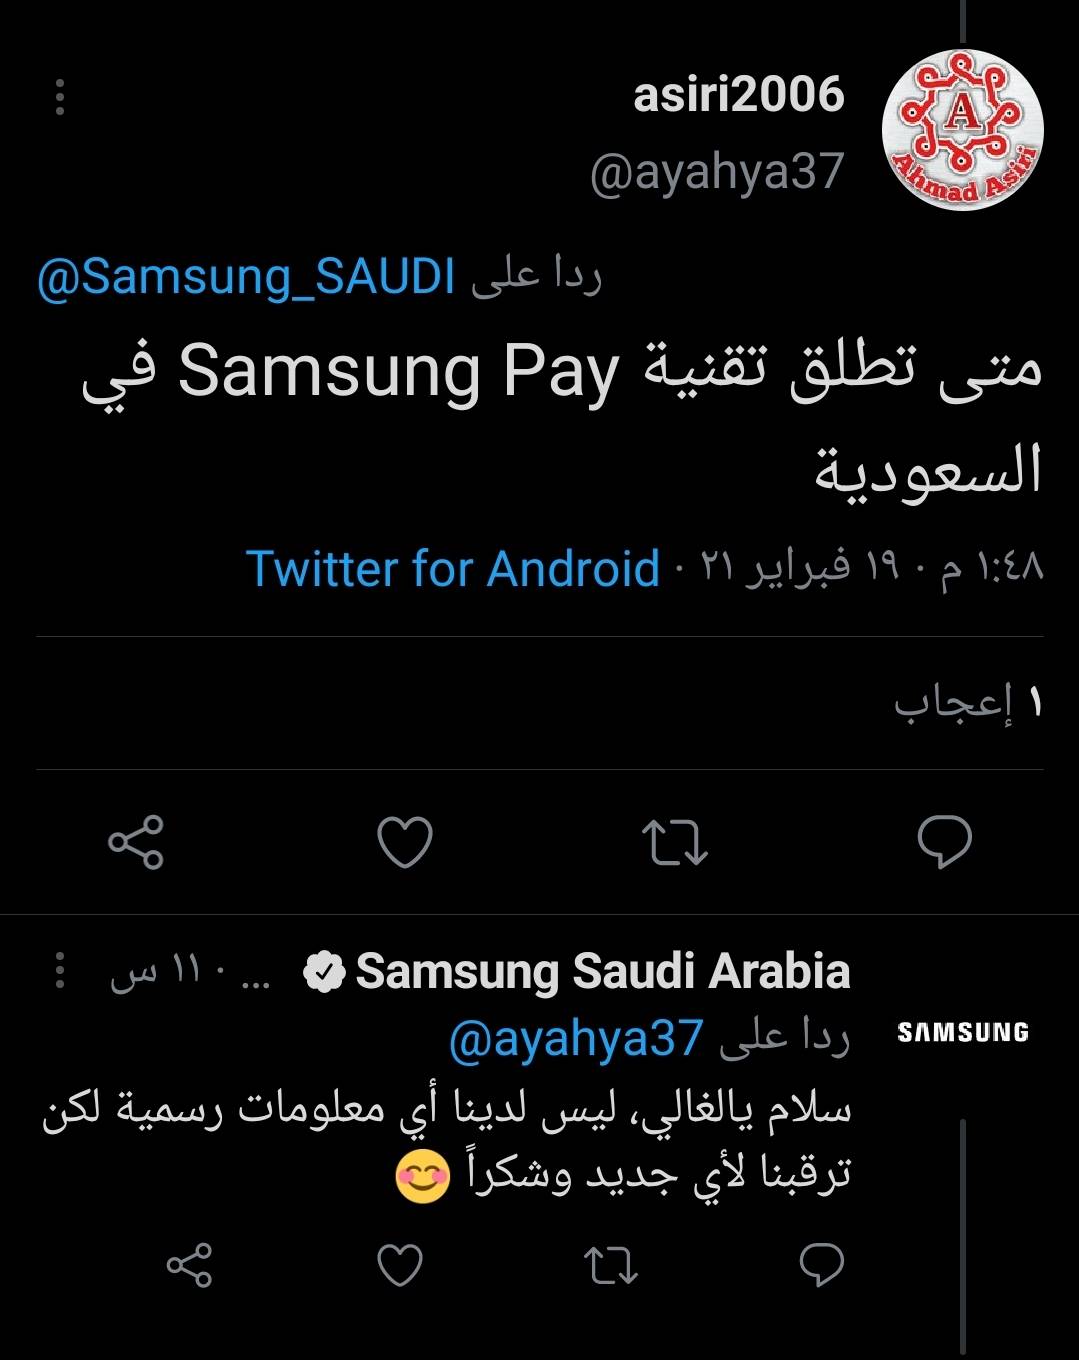 خدمة samsung pay قريبا في السعودية ! - Samsung Members